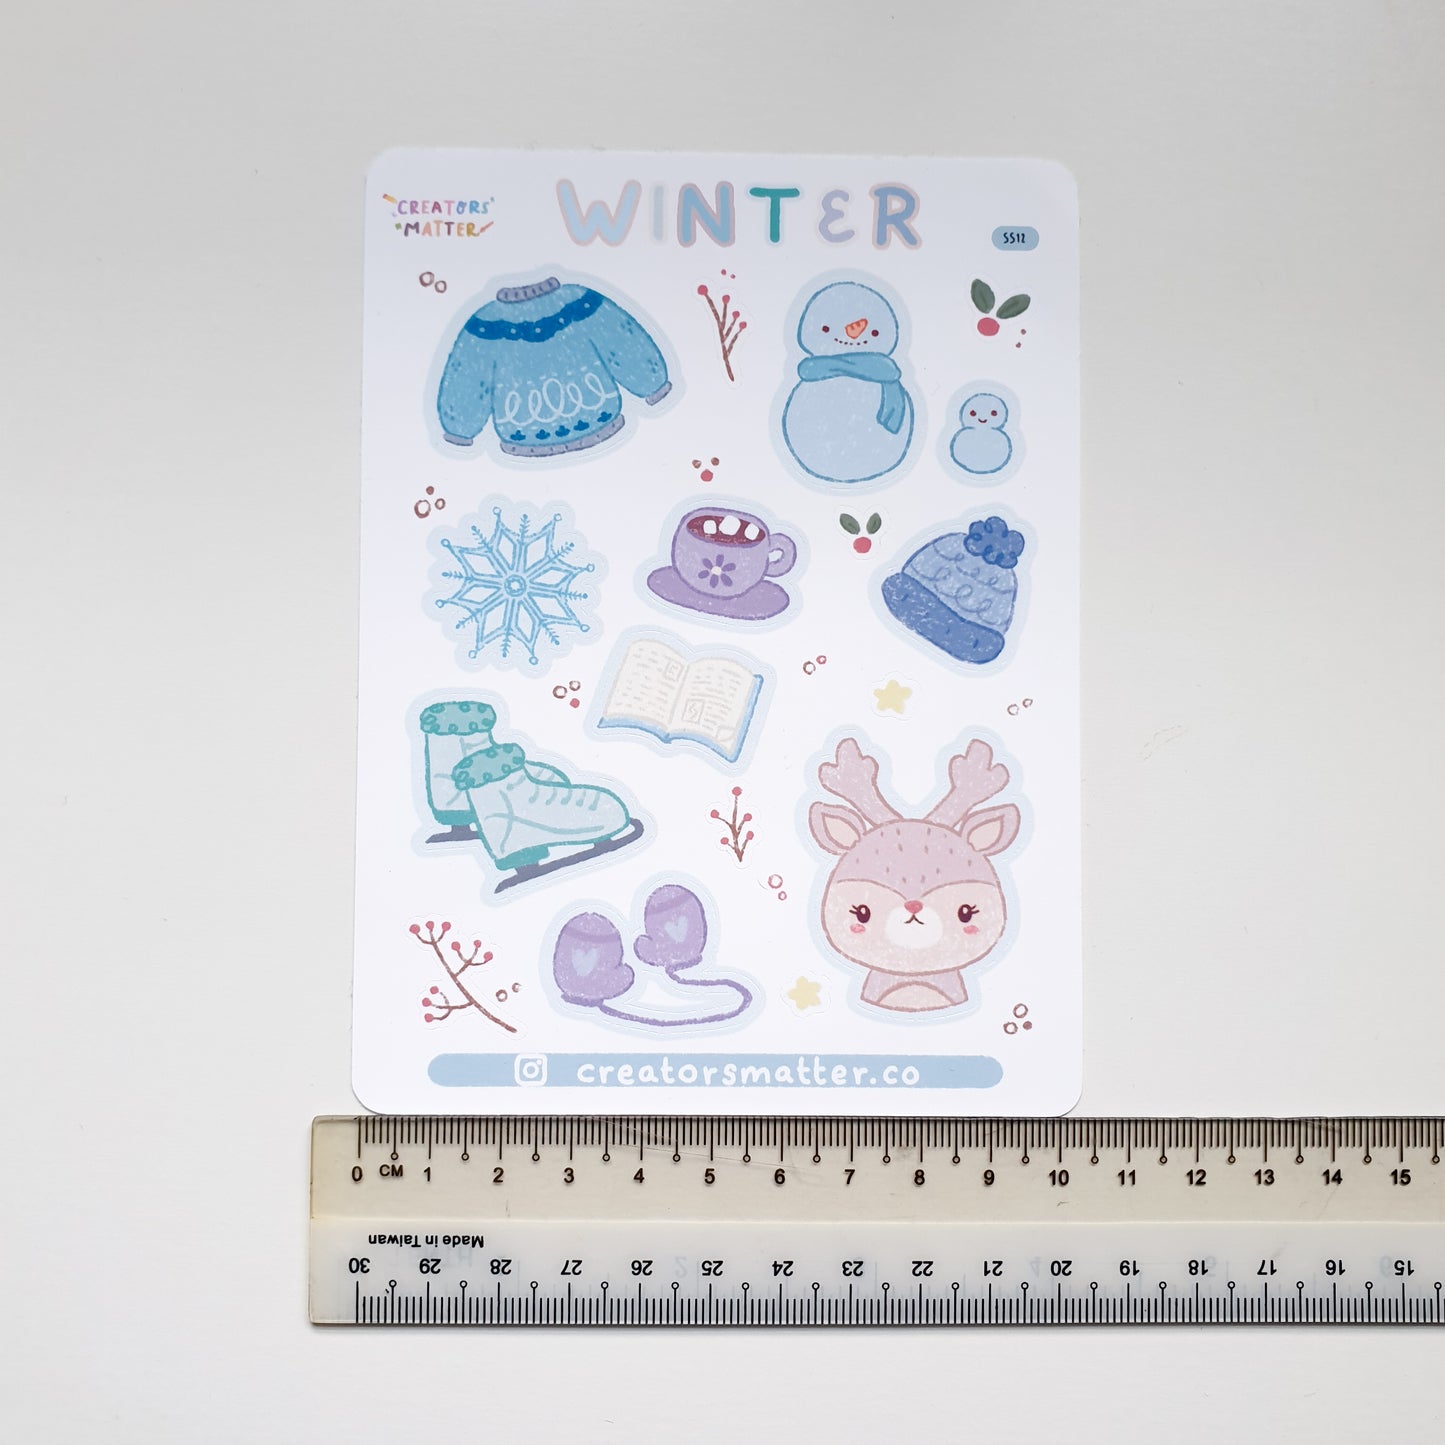 Creators Matter | Winter Sticker Sheet